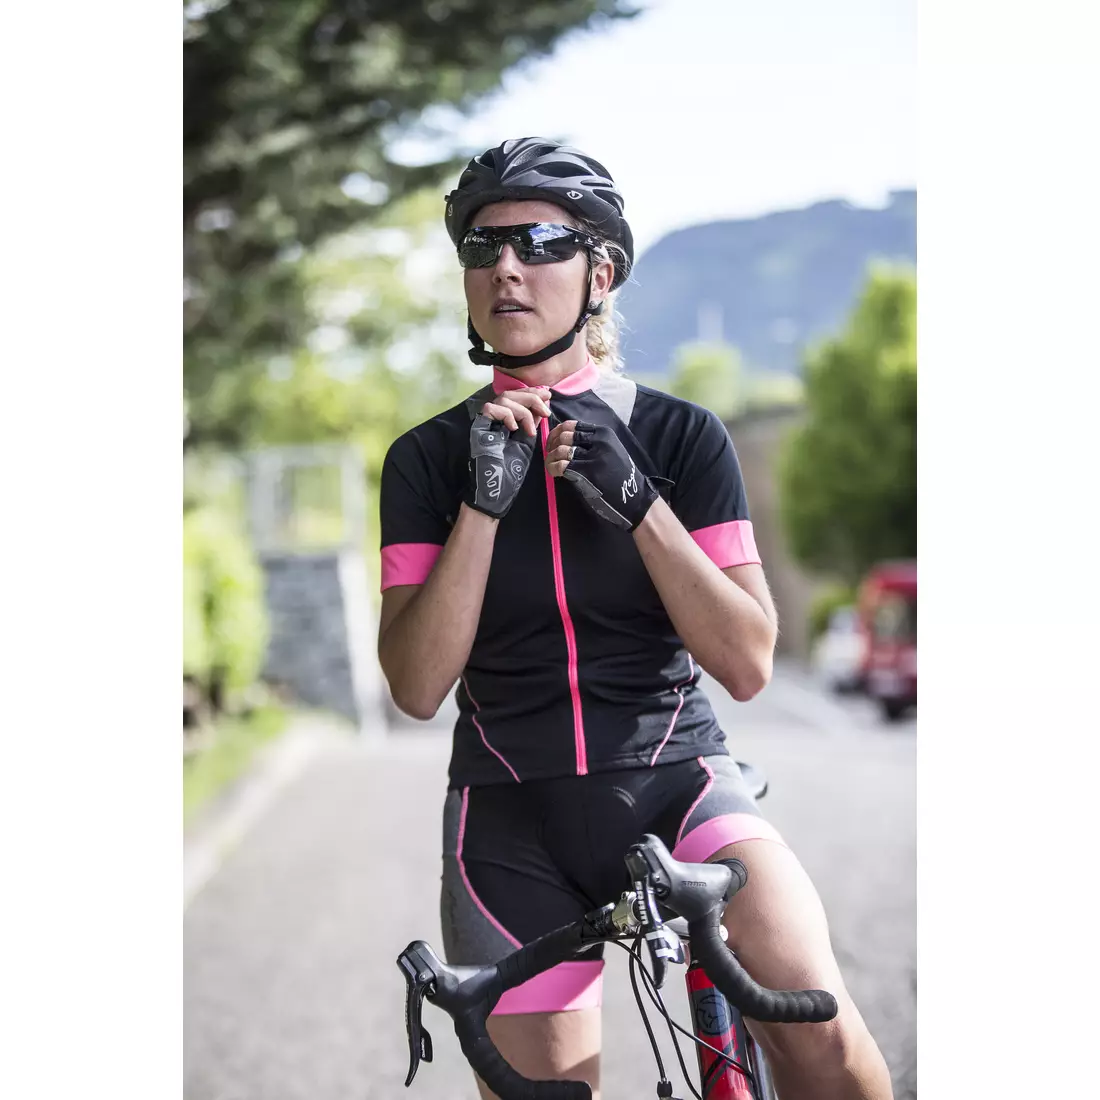 ROGELLI CARLYN - dámský cyklistický dres 010.026, černo-růžový